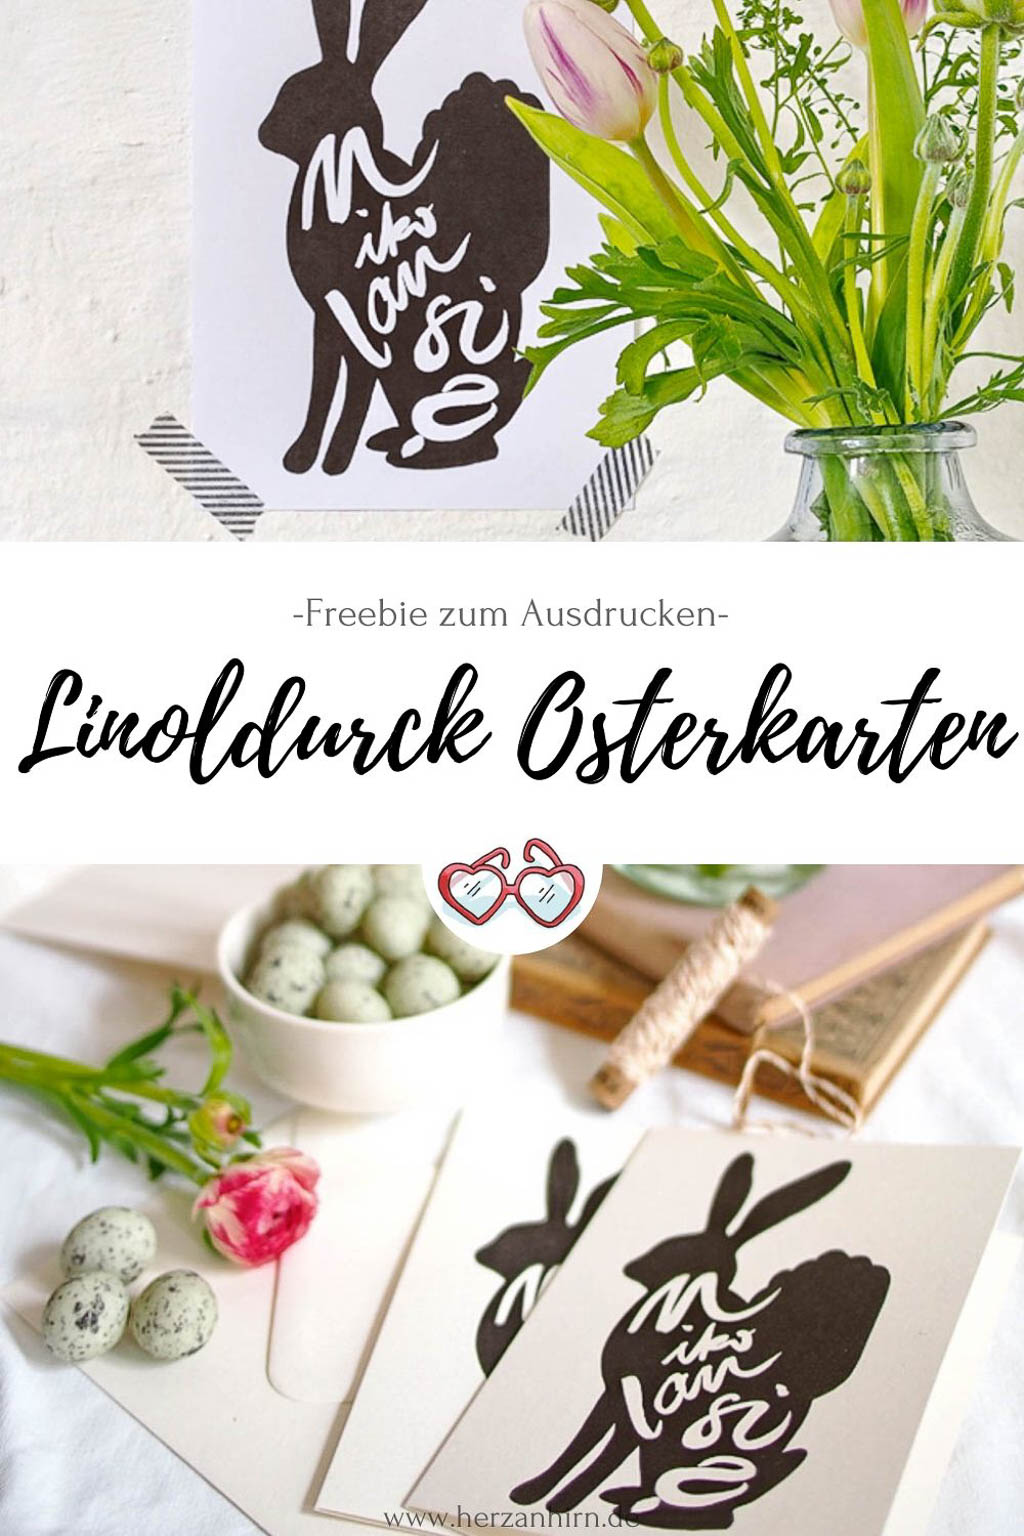 Linoldruck Osterkarten Pinterest Grafik